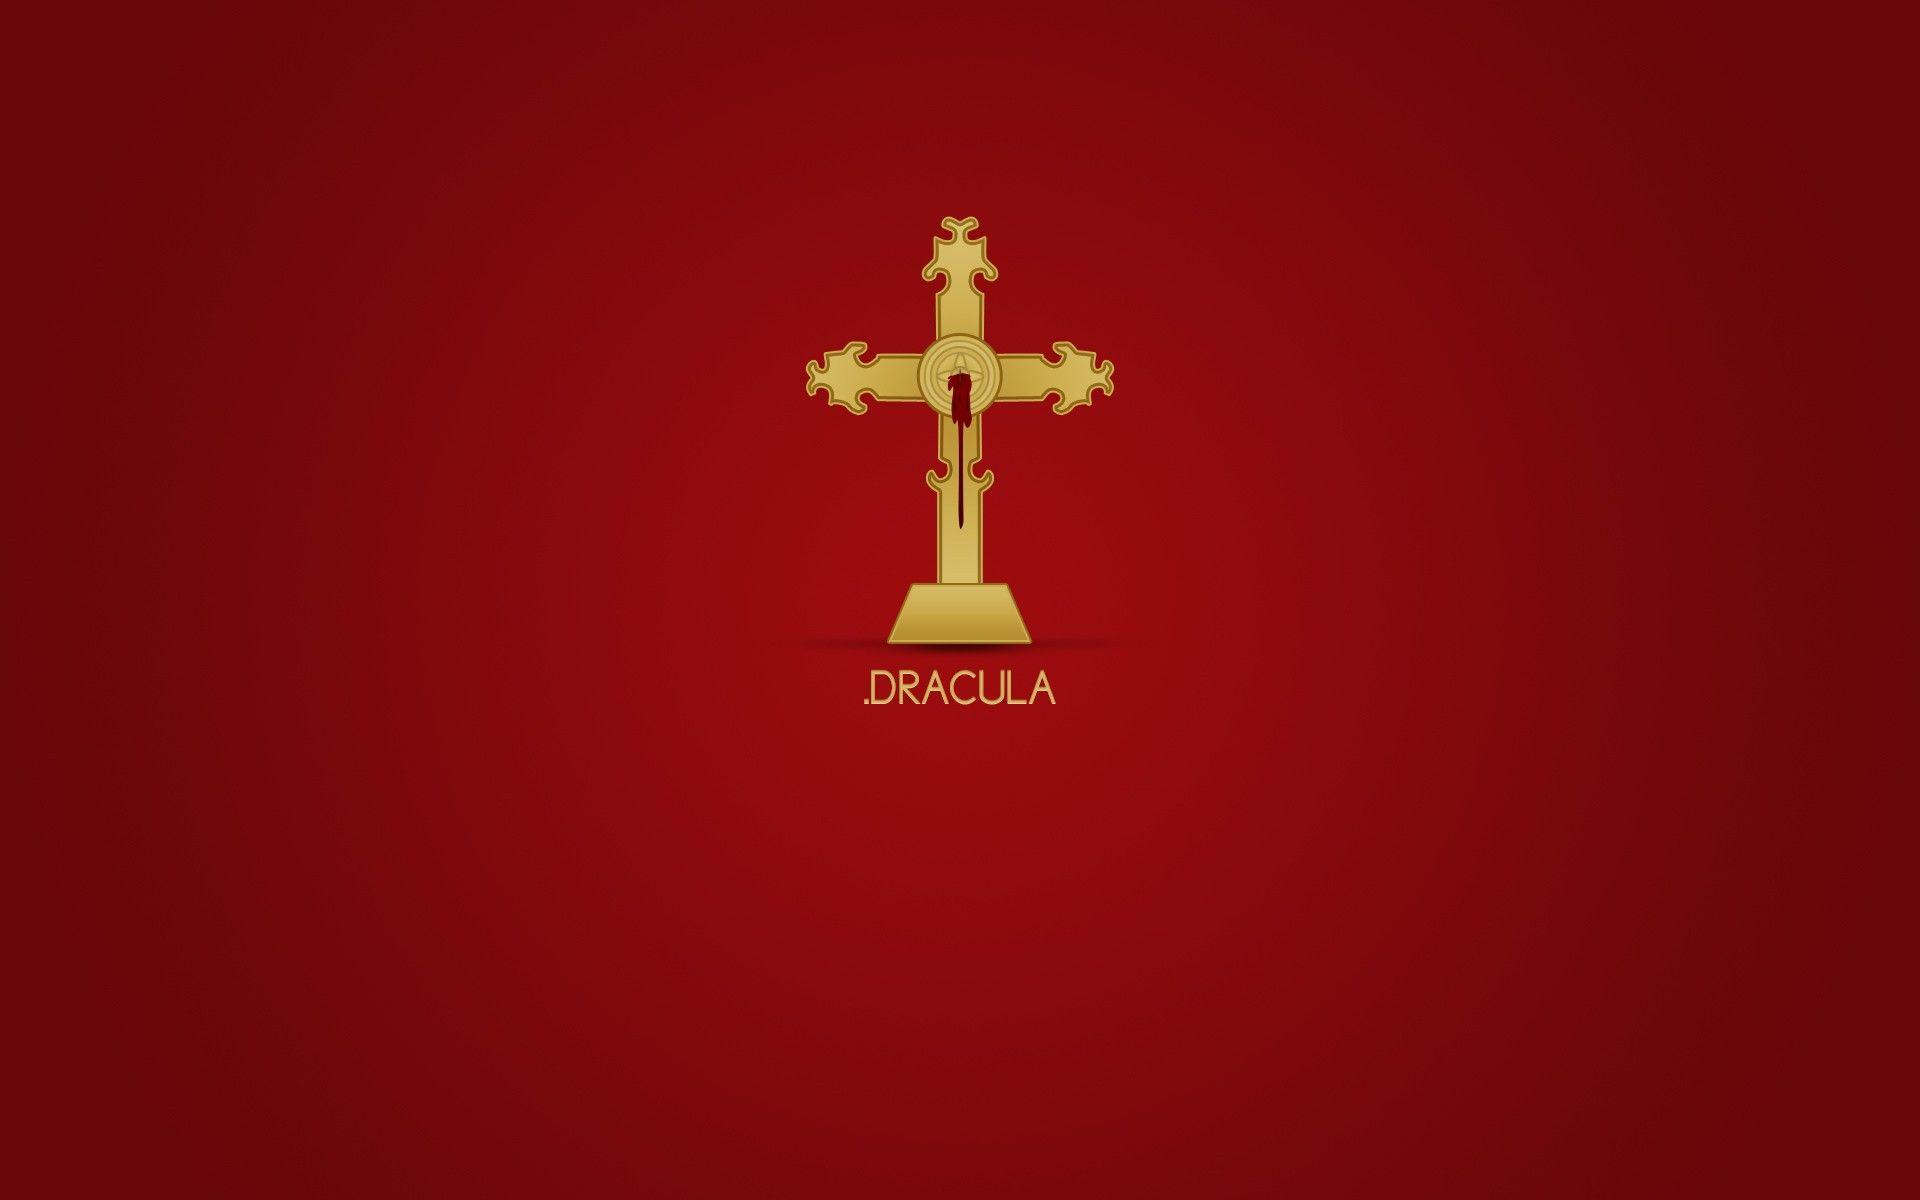 Download the Dracula Cross Wallpaper, Dracula Cross iPhone Wallpaper